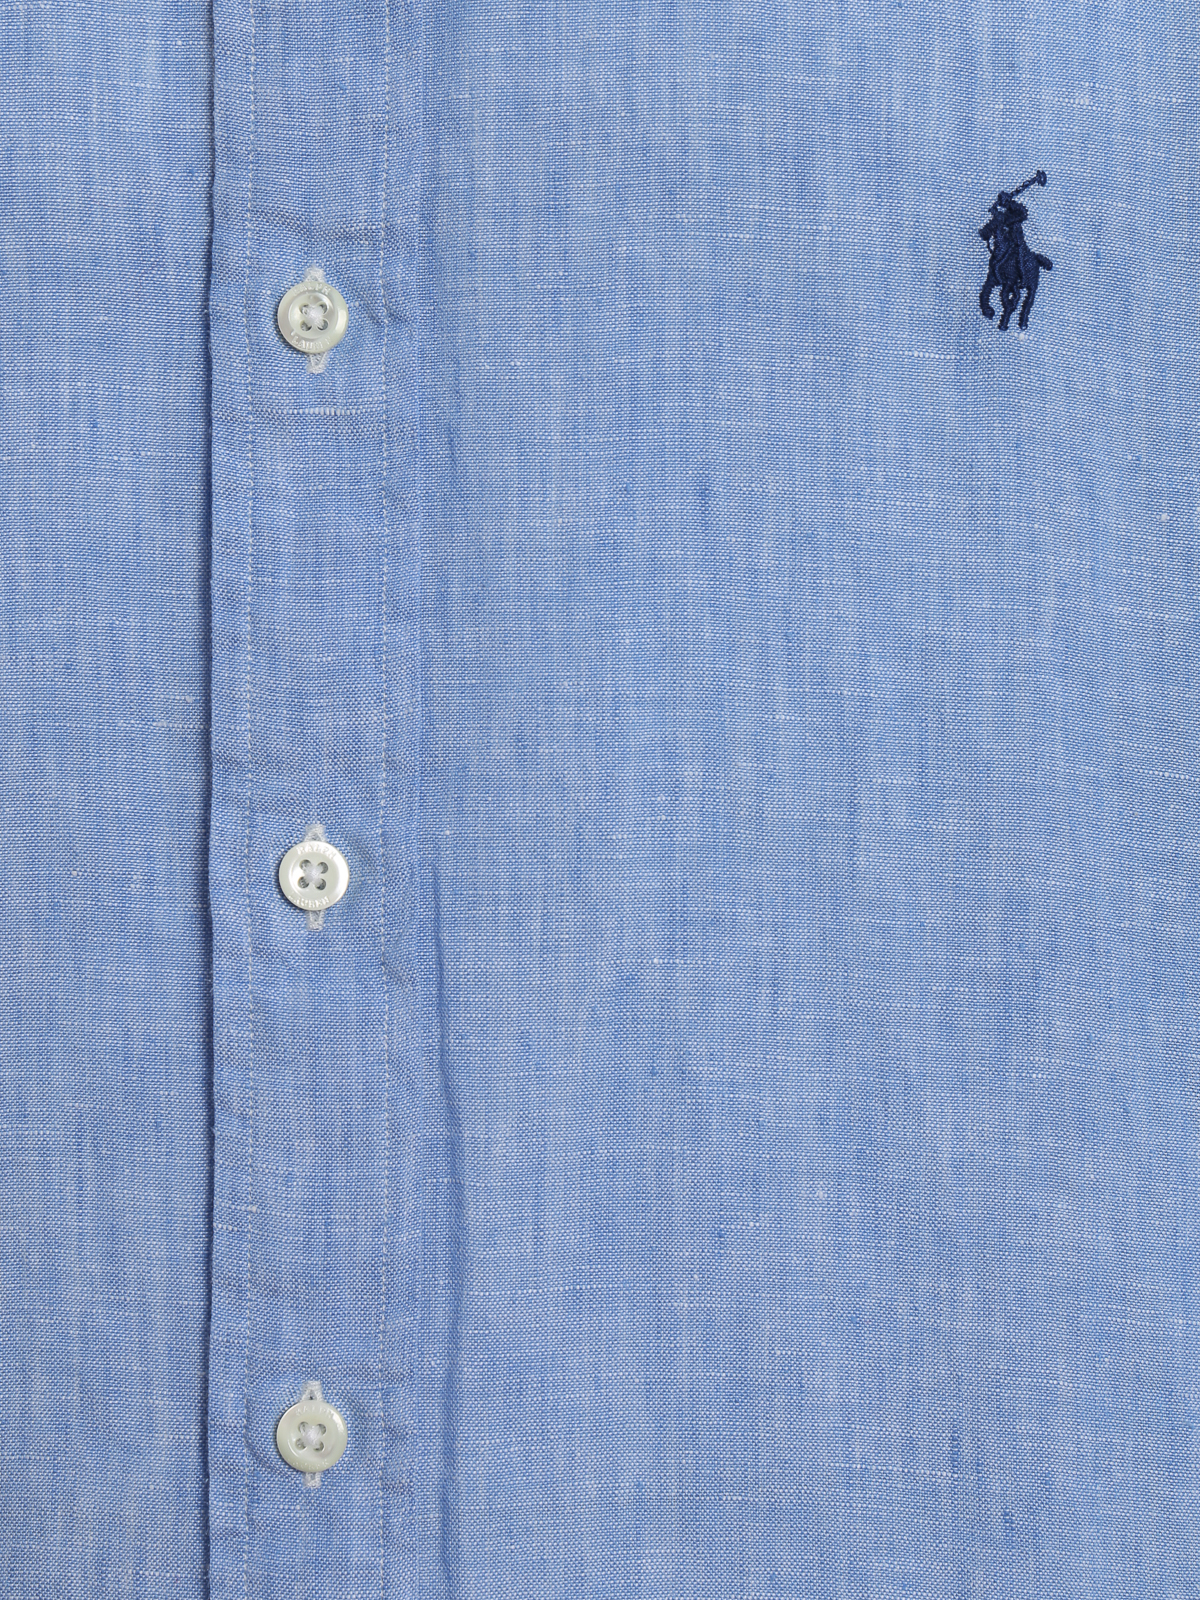 Polo Ralph Lauren - Sky blue linen shirt - shirts - 710740806002